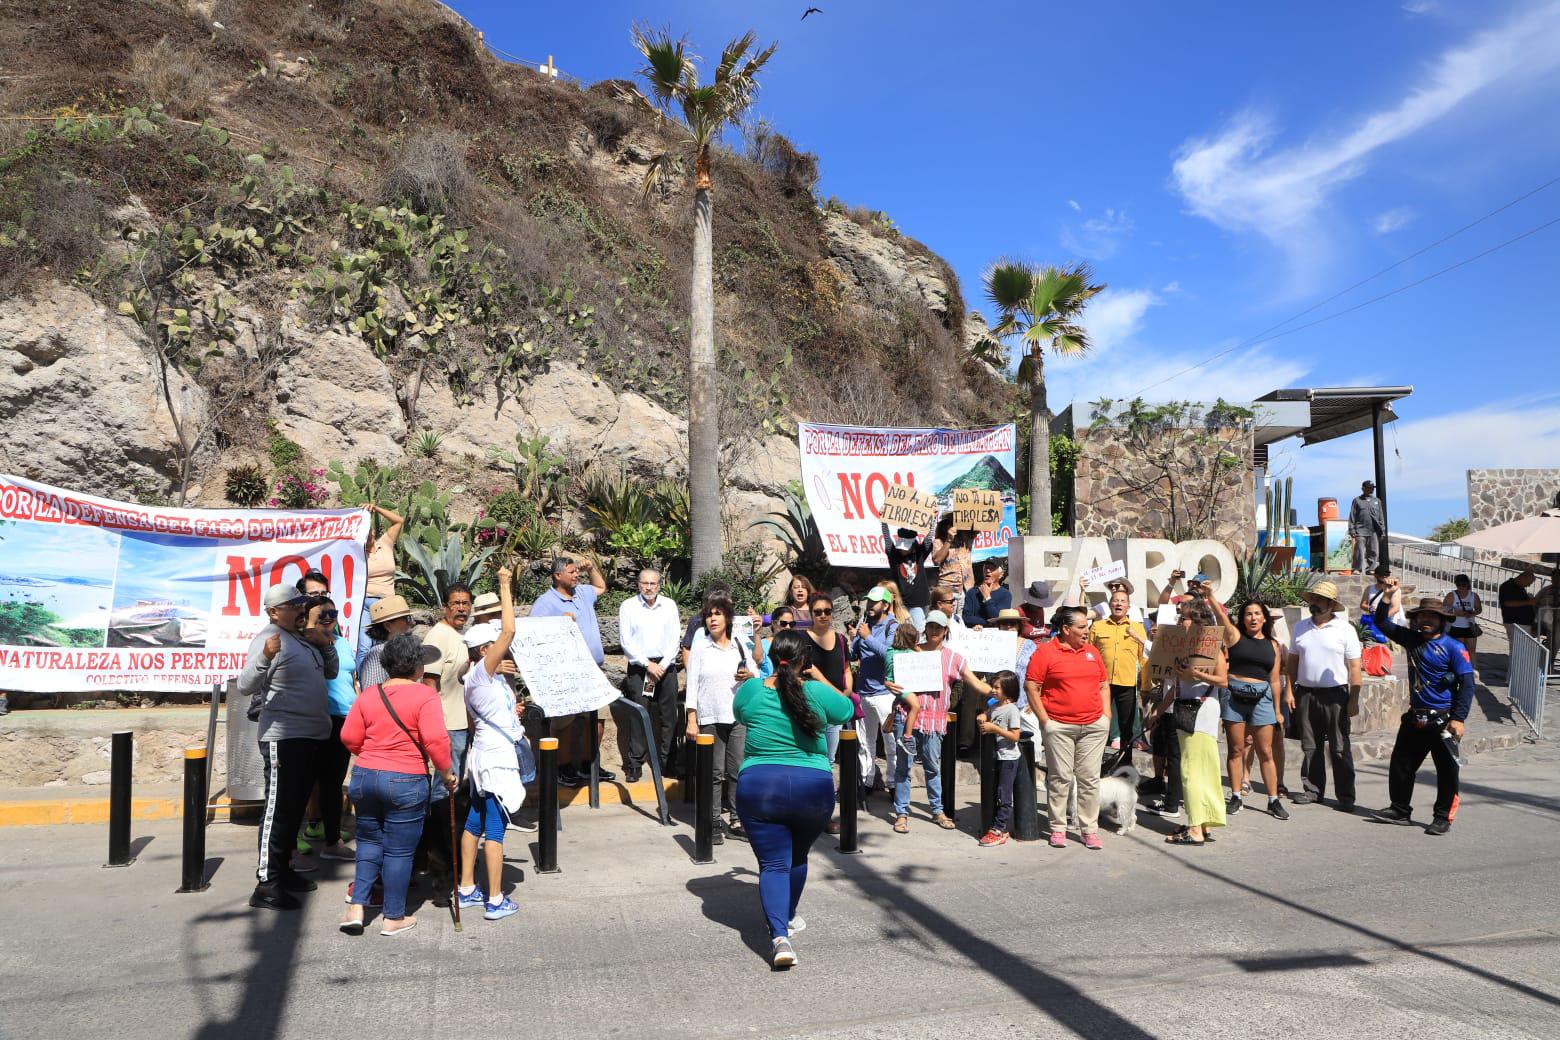 $!Protestan en contra de la tirolesa que se construye en El Faro Mazatlán